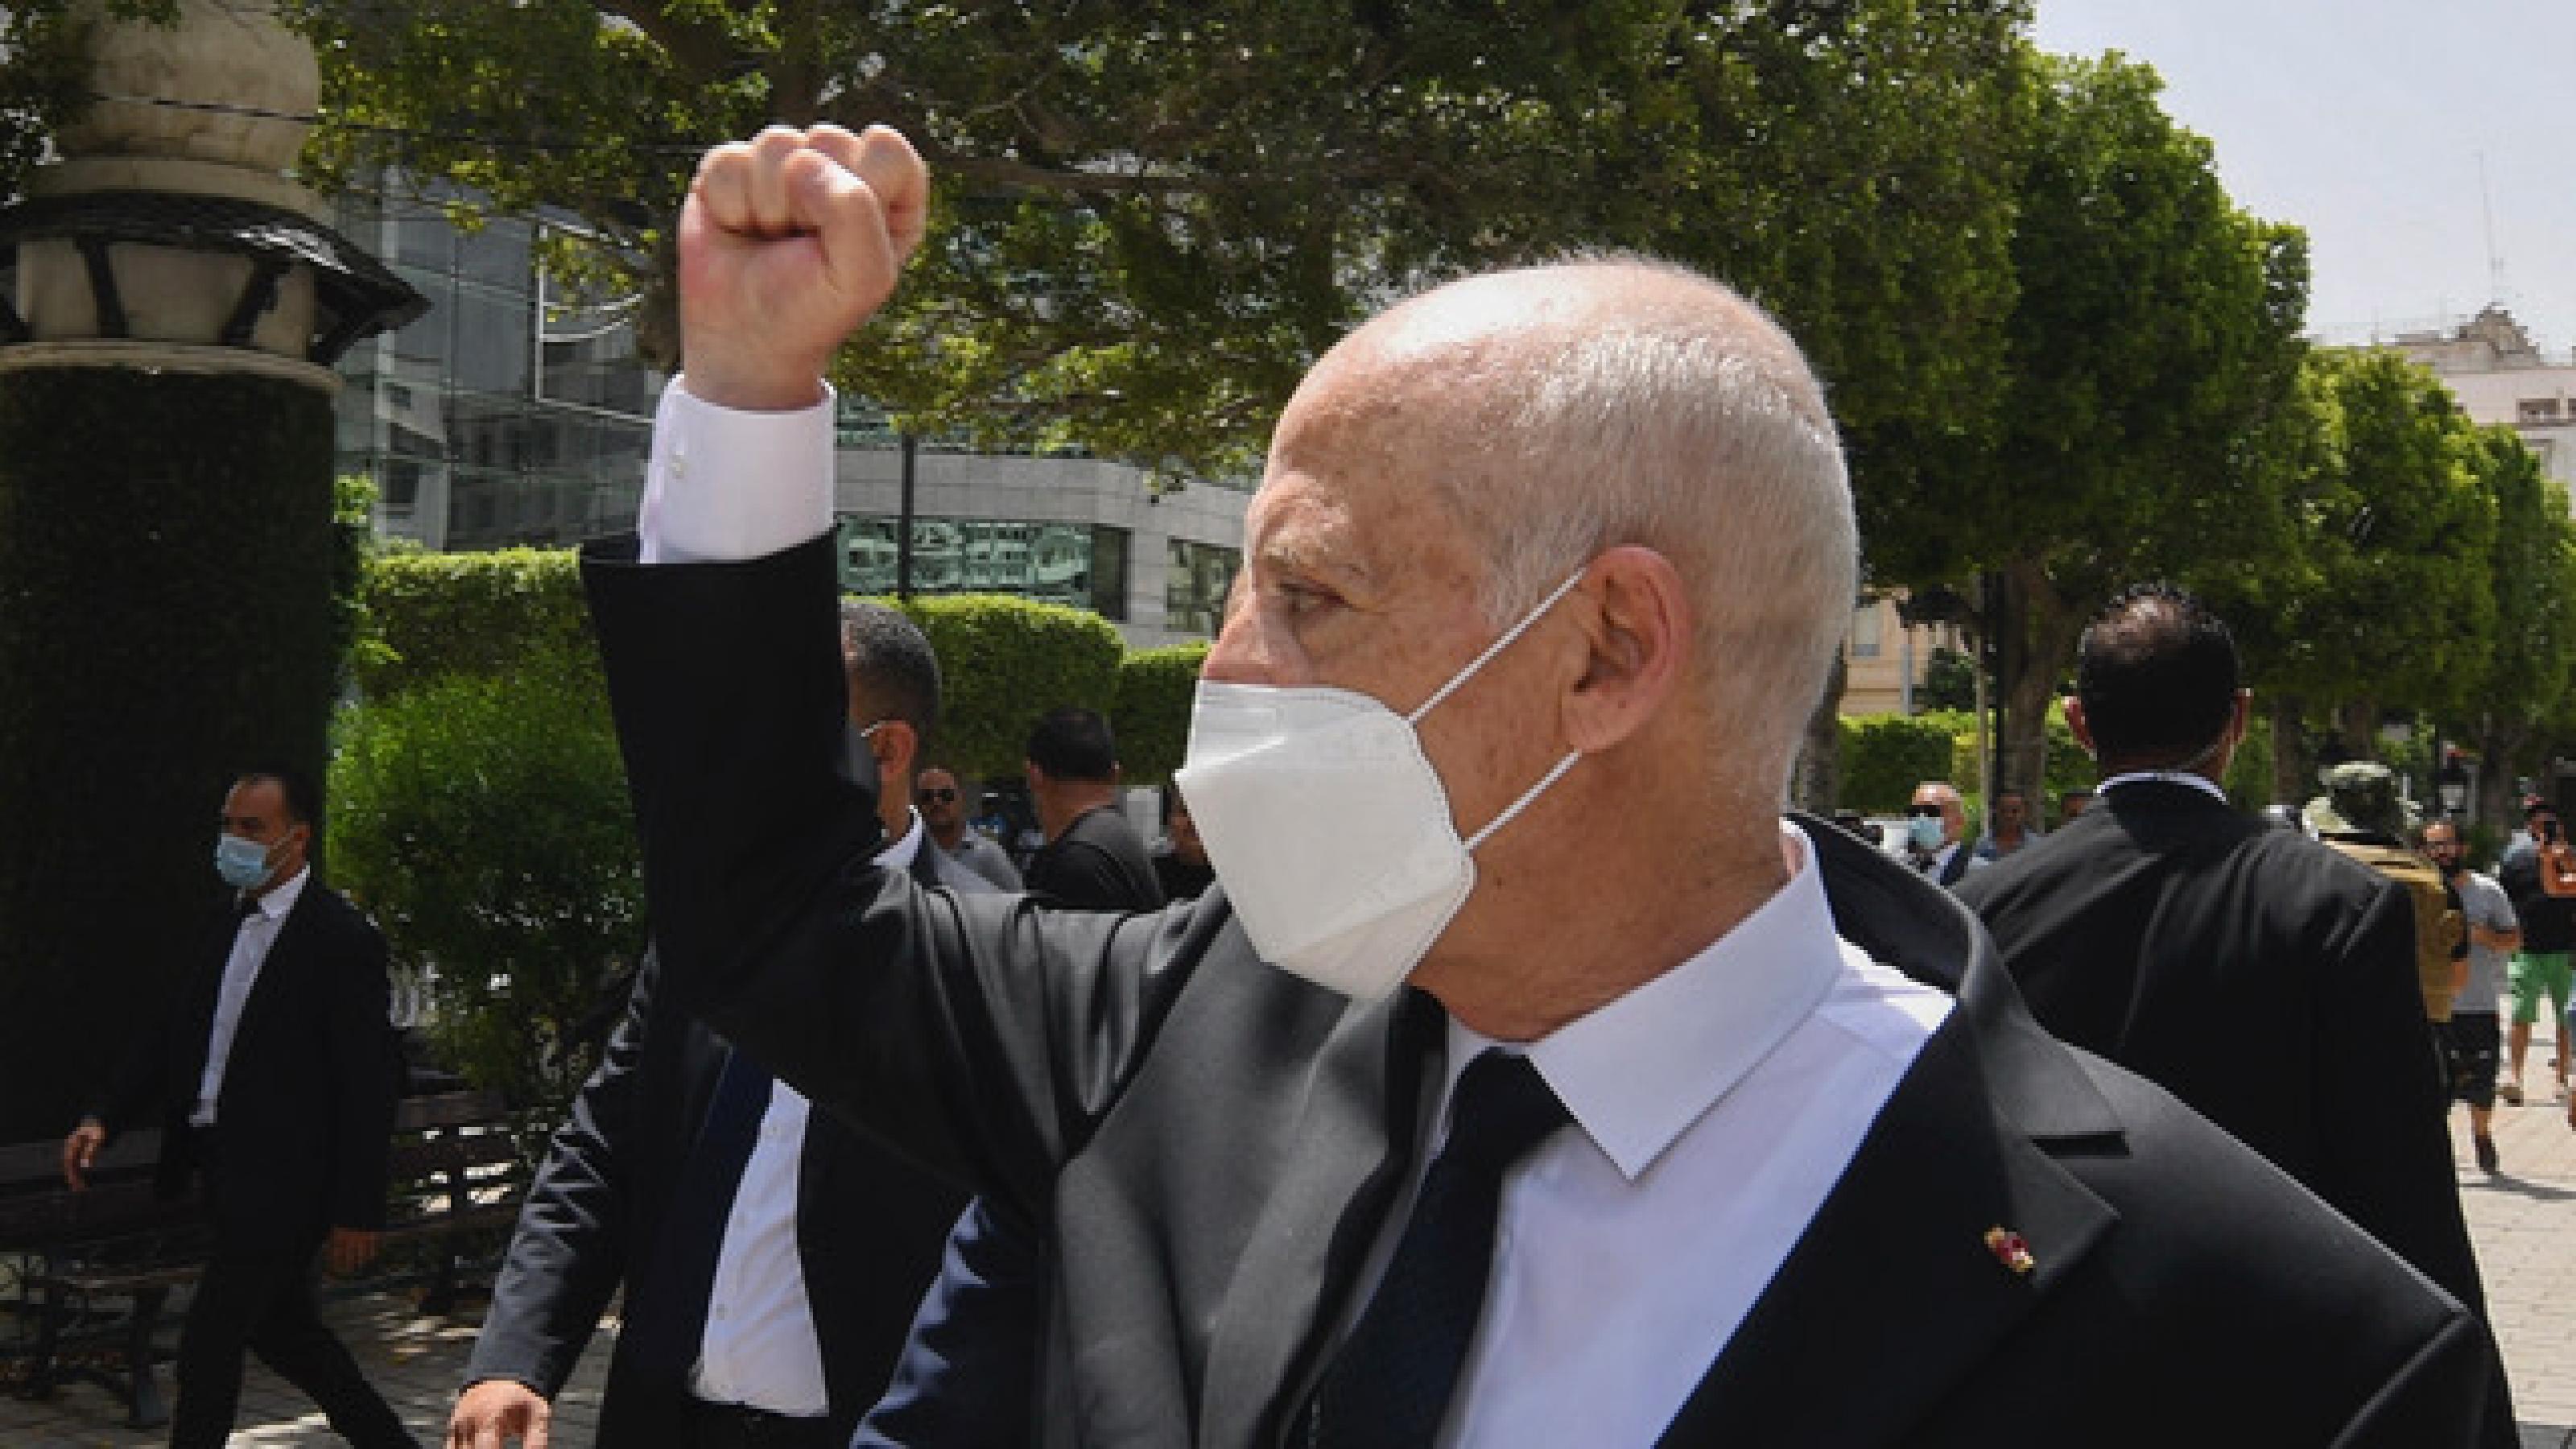 Tunesiens Präsident Kais Saïed geht über die Ave Bourguiba im Stadtzentrum der Hauptstadt Tunis. Er trägt einen schwarzen Anzug und eine FFP2-Maske. Die Hand hält er zur Faust geballt in die Höhe. Hinter und neben ihm laufen Personenschützer.